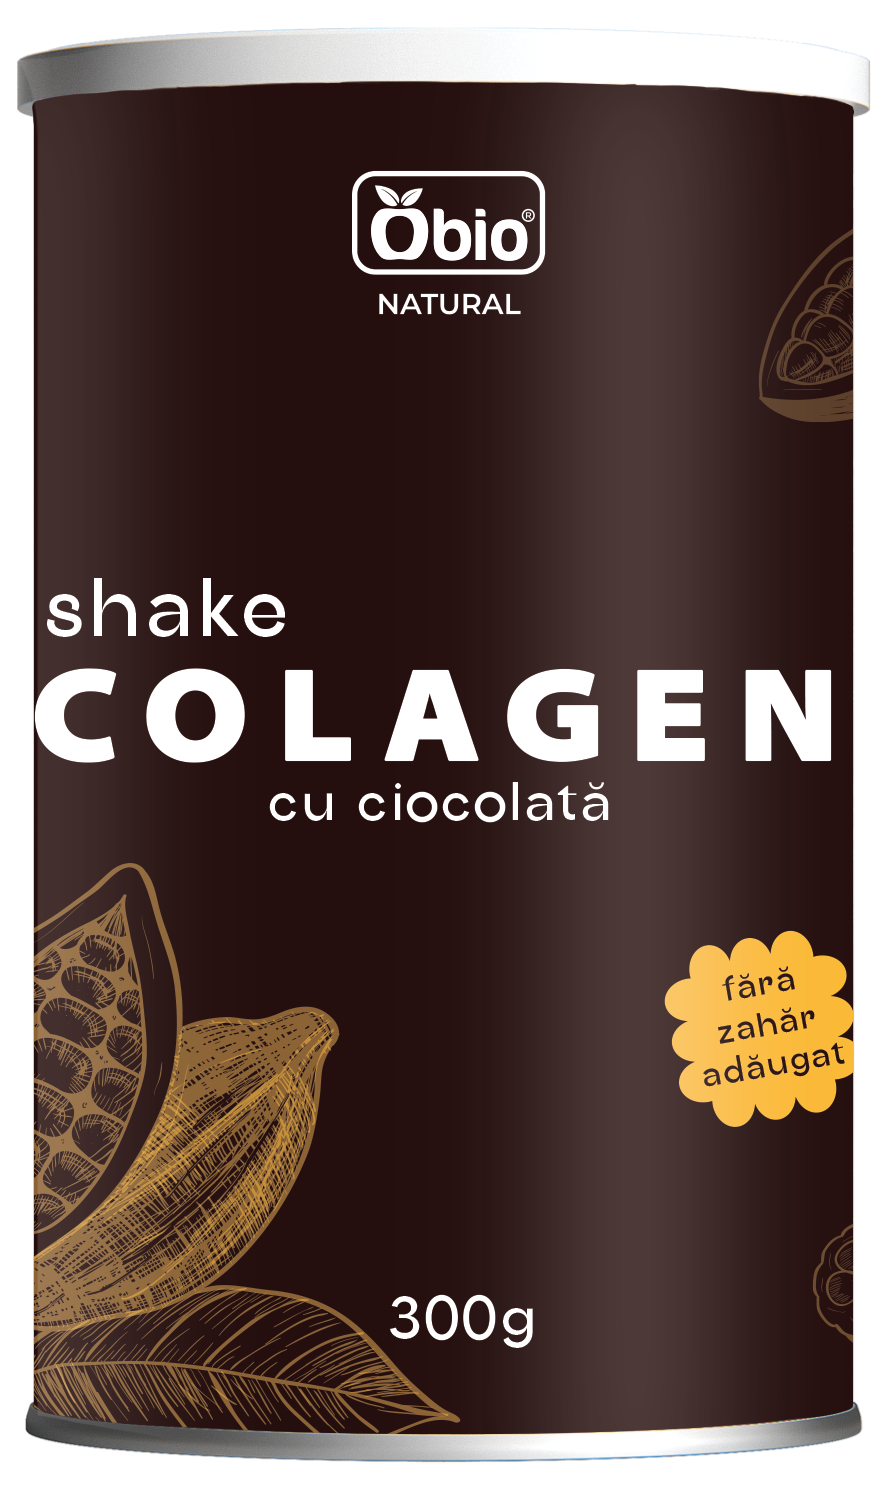 <h2>Colagen shake cu ciocolata 300g, Obio</h2><p>Colagenul mai este denumit si proteina tineretii. Savureaza o bautura sanatoasa cu colagen, bogata in proteine, cu tarate de psyllium care sunt bogate in fibre, si cu gust de ciocolata, fara adaos de zahar.<br />Daca doriti un gust mai dulce, puteti adauga miere sau alt indulcitor natural. Sau puteti condimenta shake-ul dupa preferinte, de exemplu cu un strop de scortisoara, nucsoara, cardamom, etc.</p><p><strong>Ingrediente:</strong> peptide active de colagen bovin (colagen tip 1) 62%, cacao pudra 18%, bautura de orez pudra bio (orez bio, beta glucan din ovaz, ulei de floarea soarelui bio, sare), tarate de psyllium pudra, sare.</p><p><strong>Mod de preparare:</strong> amestecati 2-3 linguri de produs (aprox. 30g) cu 250ml apa sau lapte. Se poate servi cald sau rece.</p><p>Alergeni: poate contine urme de nuci, gluten.</p><p><strong>Valori nutritionale/100g:</strong><br />Energie: 1549 kJ / 368 kcal<br />Grasimi: 2,7 g din care acizi grasi saturati 1,4 g<br />Glucide: 18 g din care zaharuri 3 g<br />Fibre alimentare: 11 g<br />Proteine: 60 g<br />Sare: 1,2 g</p><p>A se pastra in loc uscat si racoros. Dupa fiecare folosire, asigurati-va ca ati pus capacul la loc in mod corect pentru o buna etanseitate.</p><p>Fabricat in Polonia</p><p>Gramaj: 300g</p>